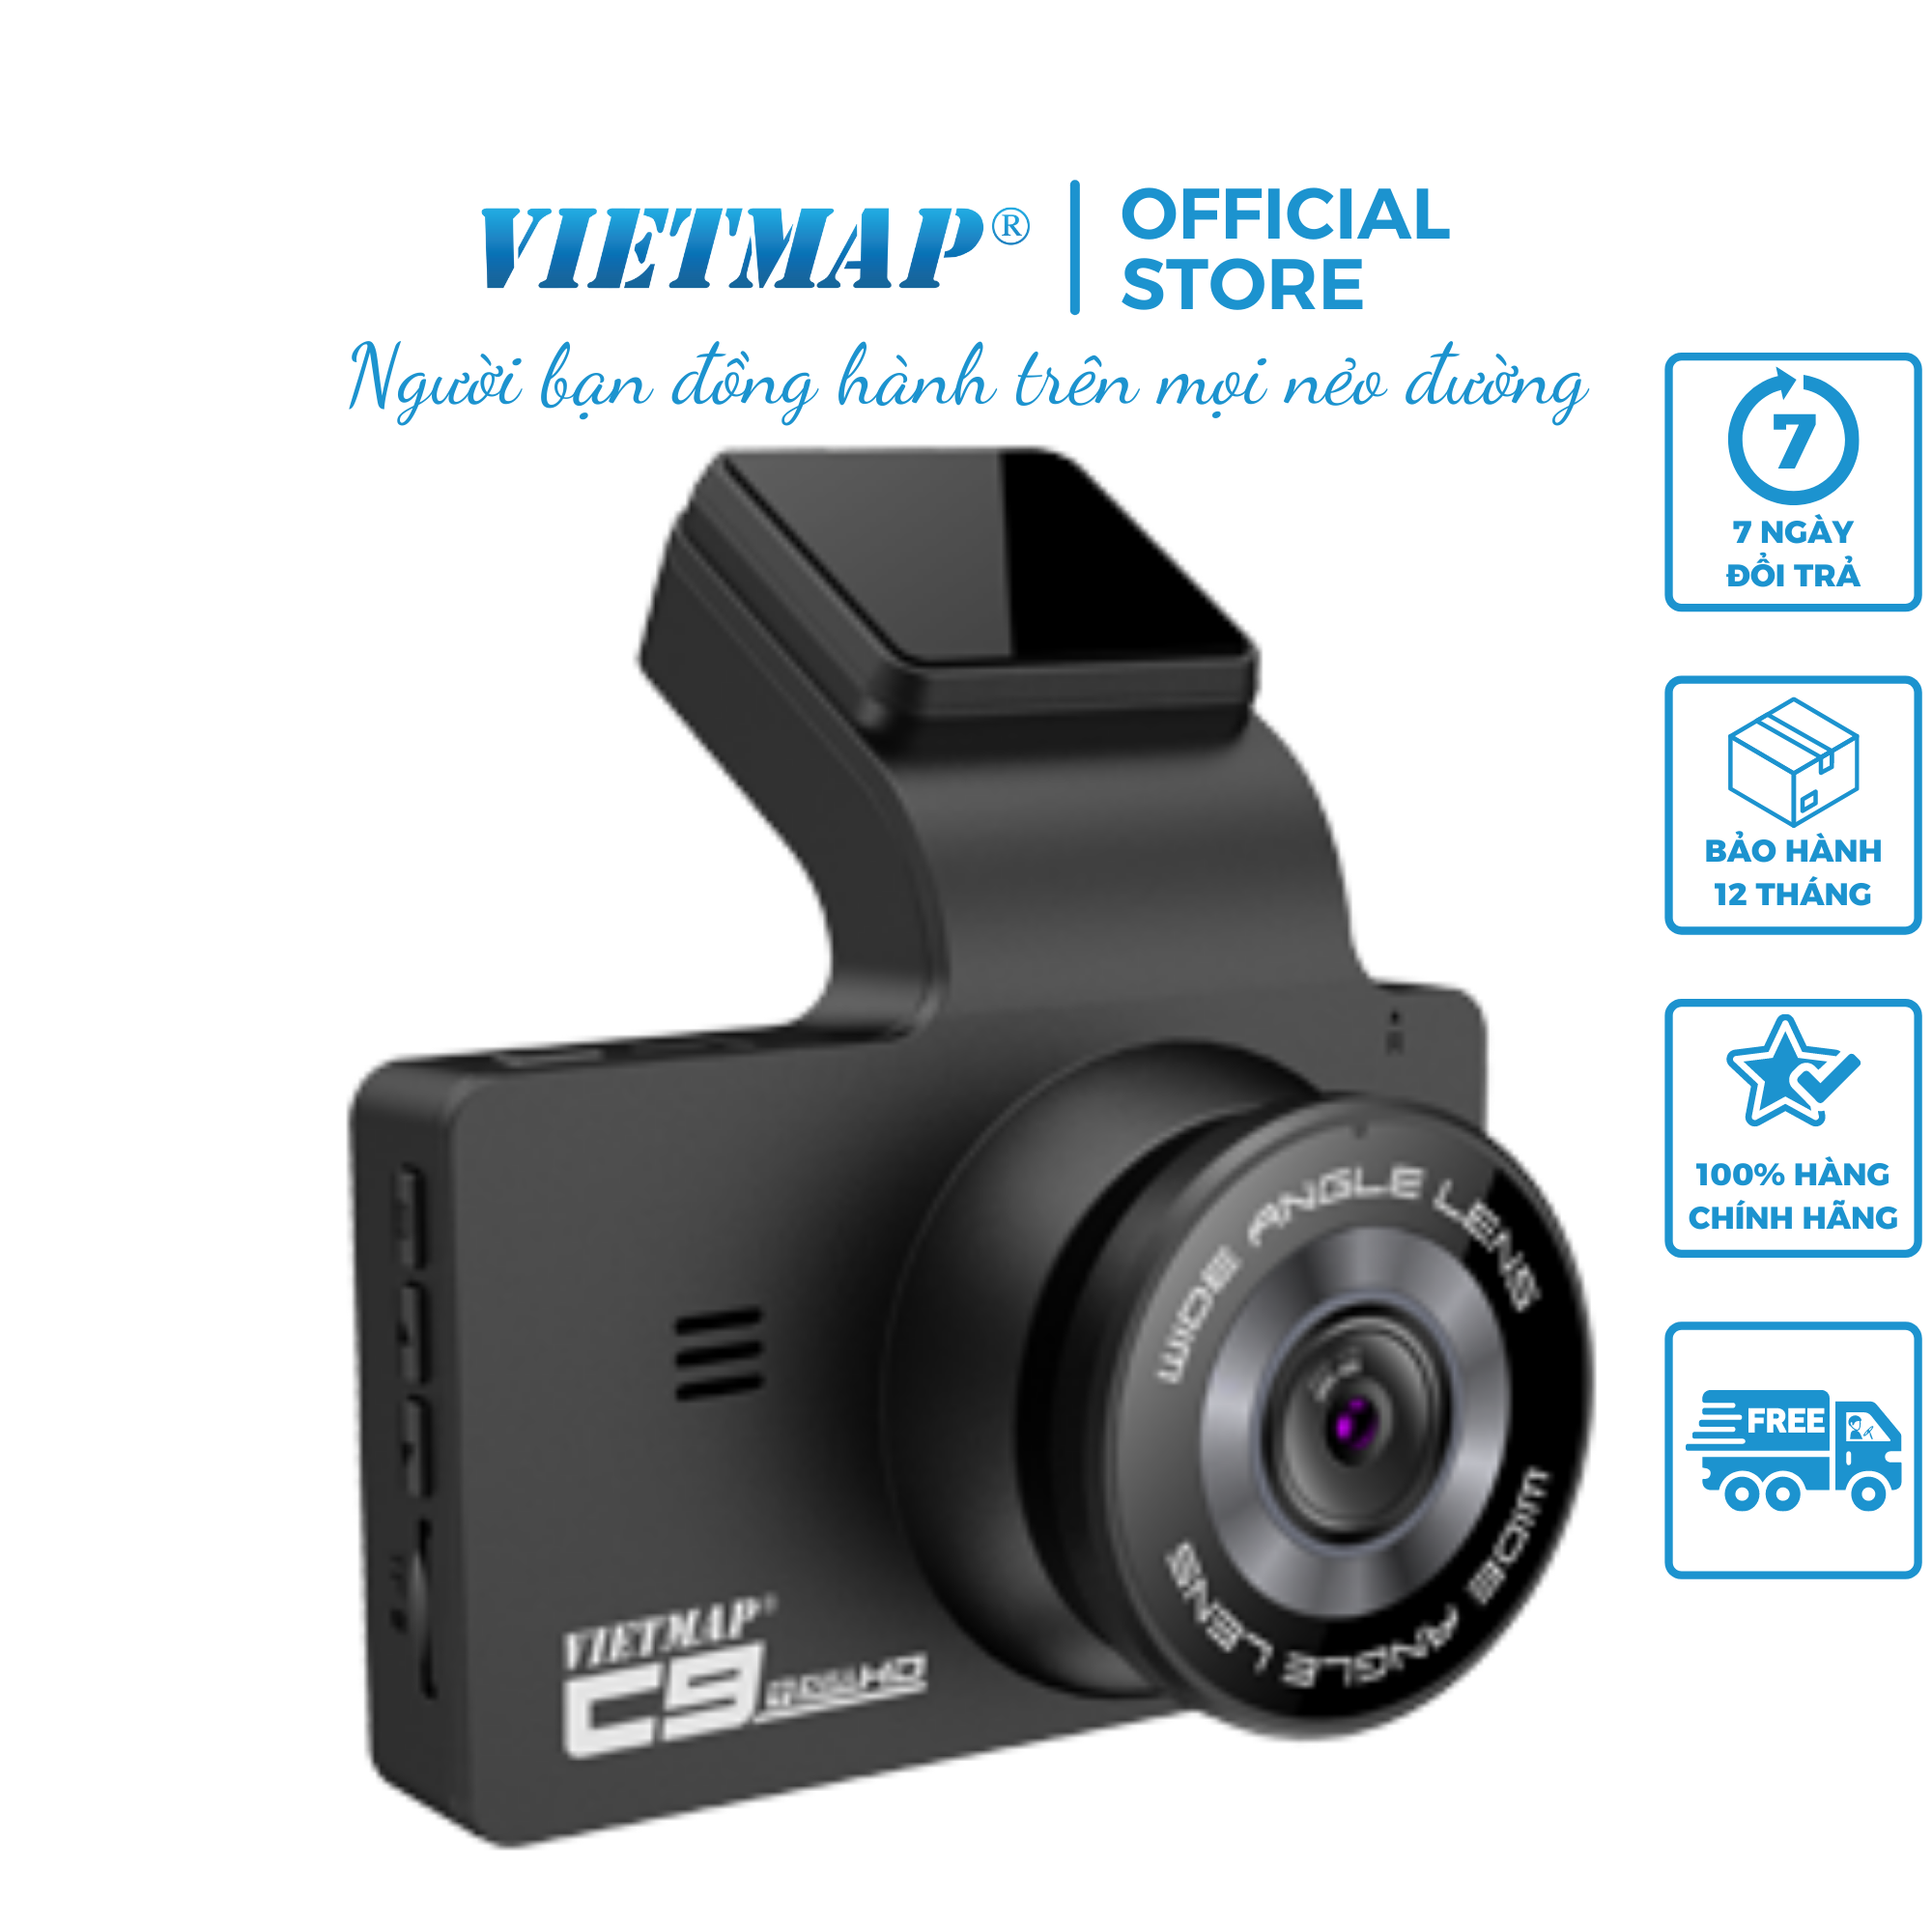 Hình ảnh VIETMAP C9 - Camera hành trình Full HD góc rộng 170° - Hàng chính hãng